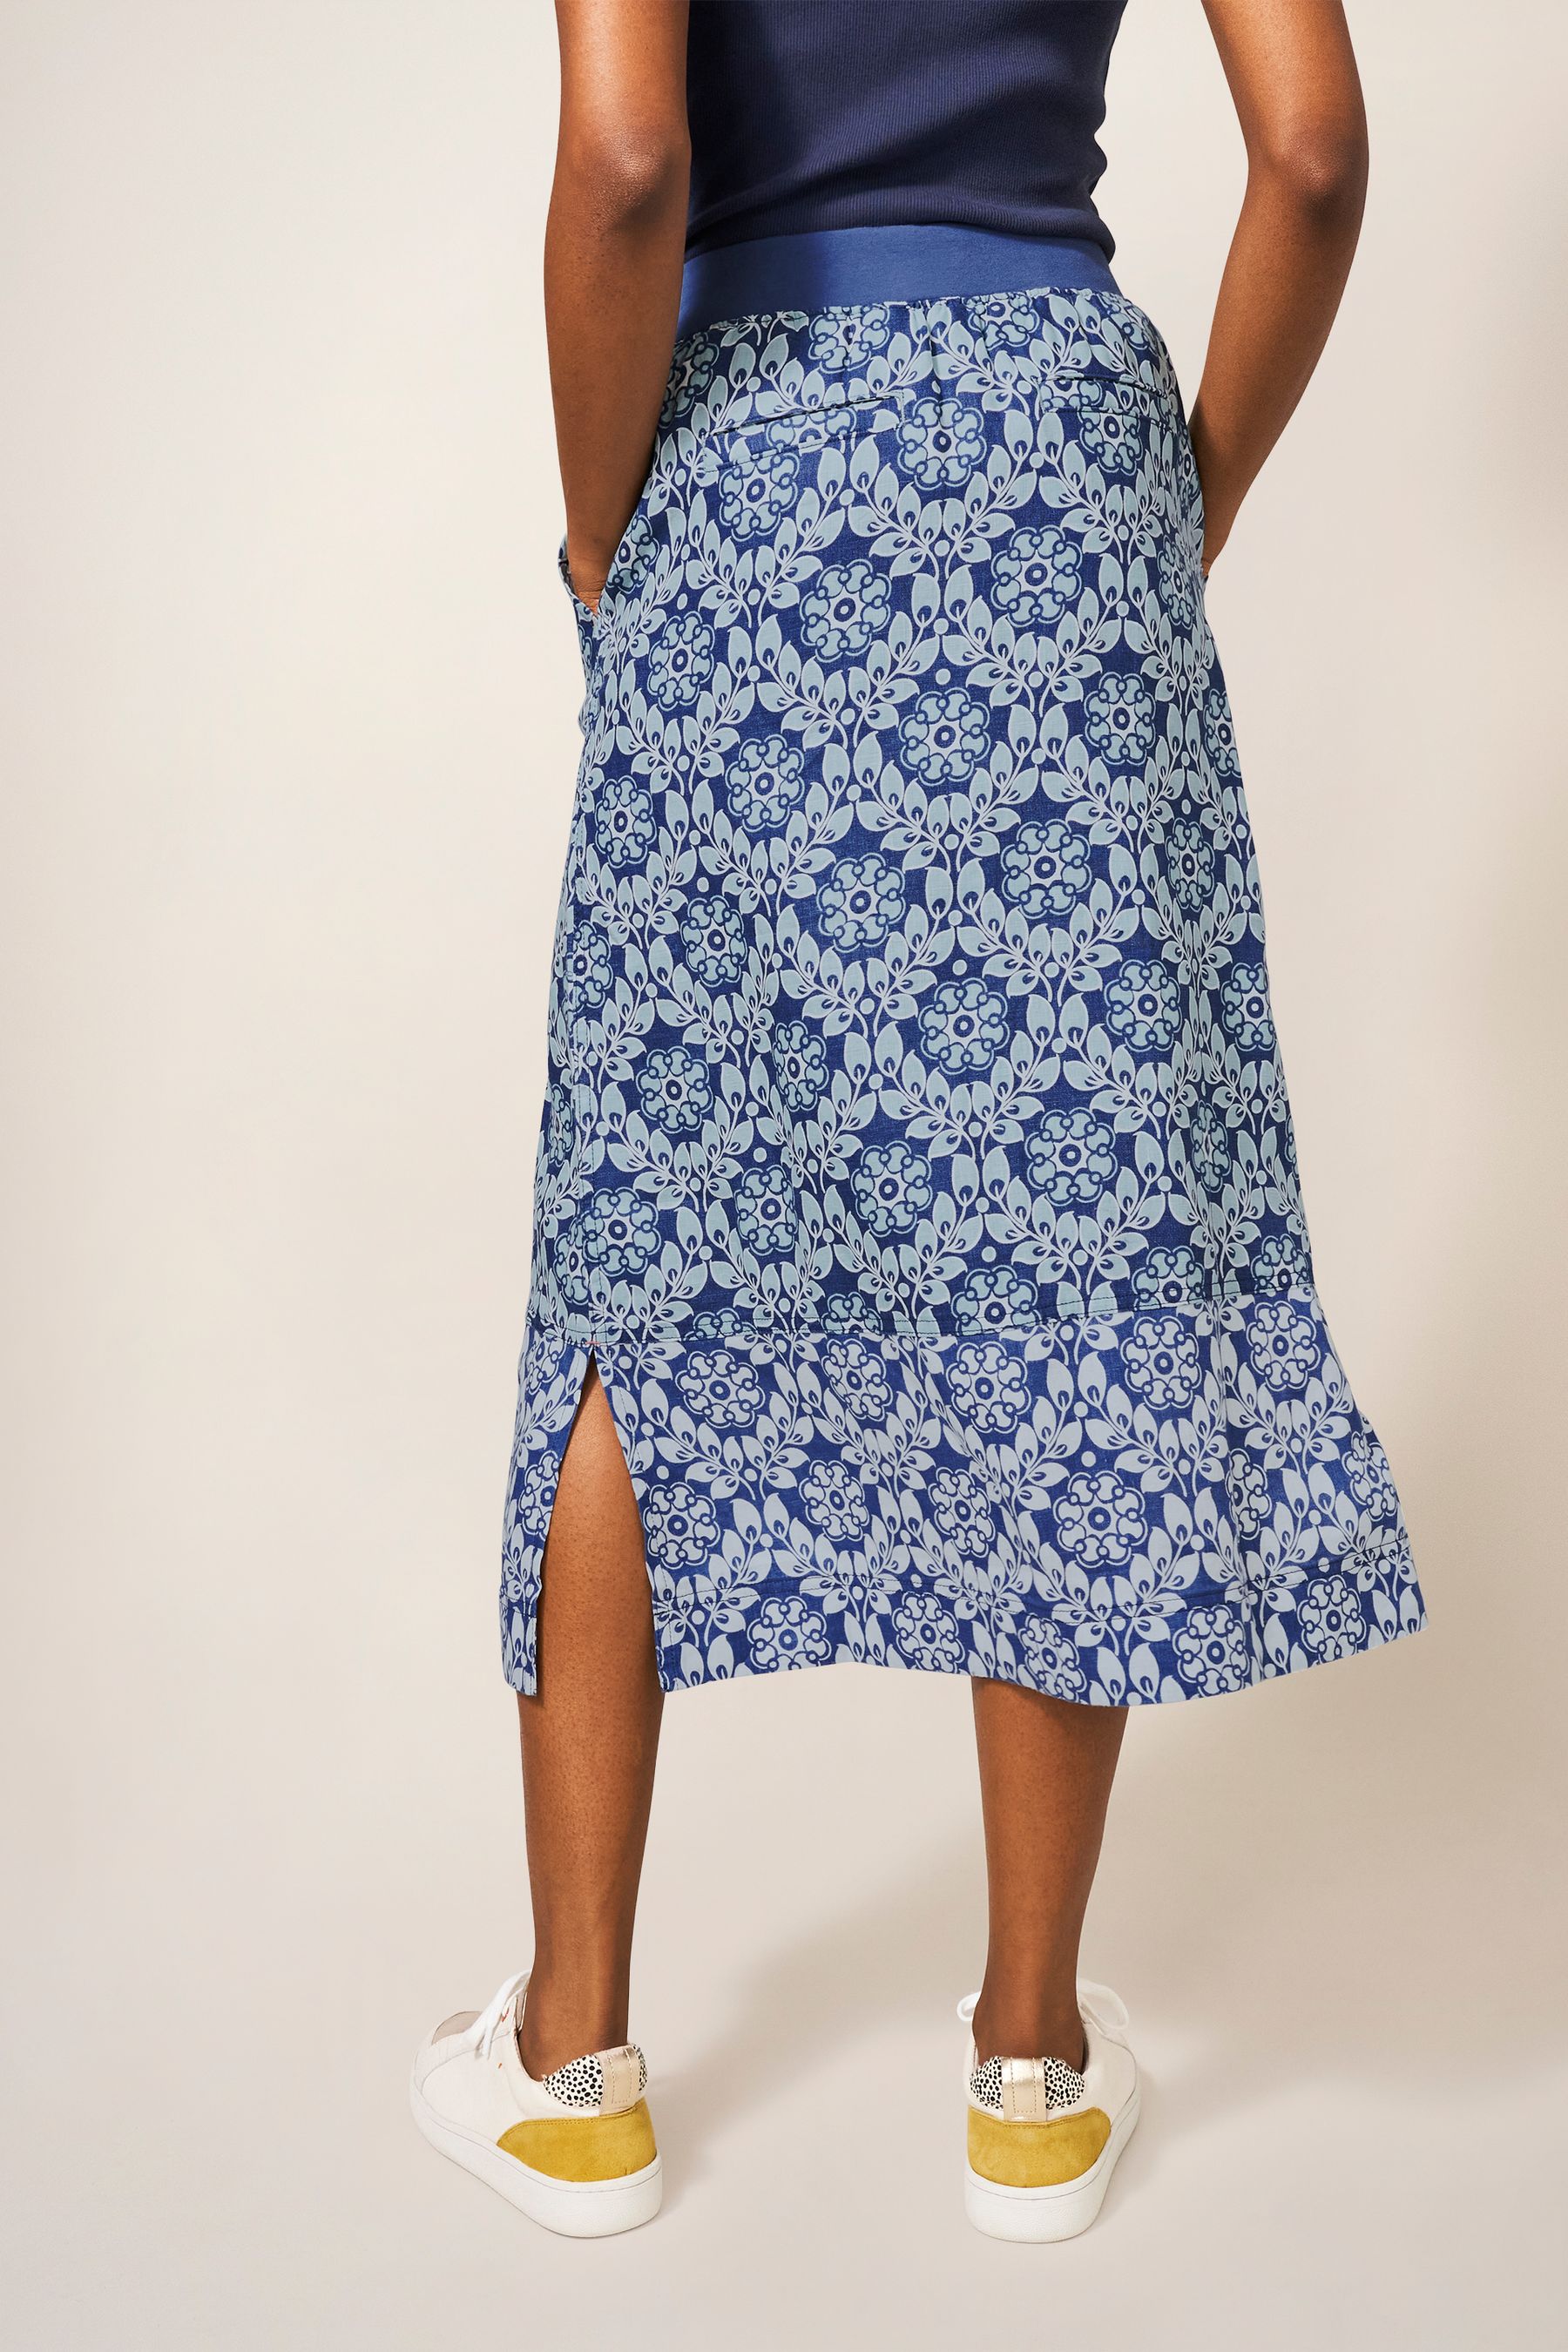 Buy White Stuff Blue Effie Linen Skirt from Next Ireland